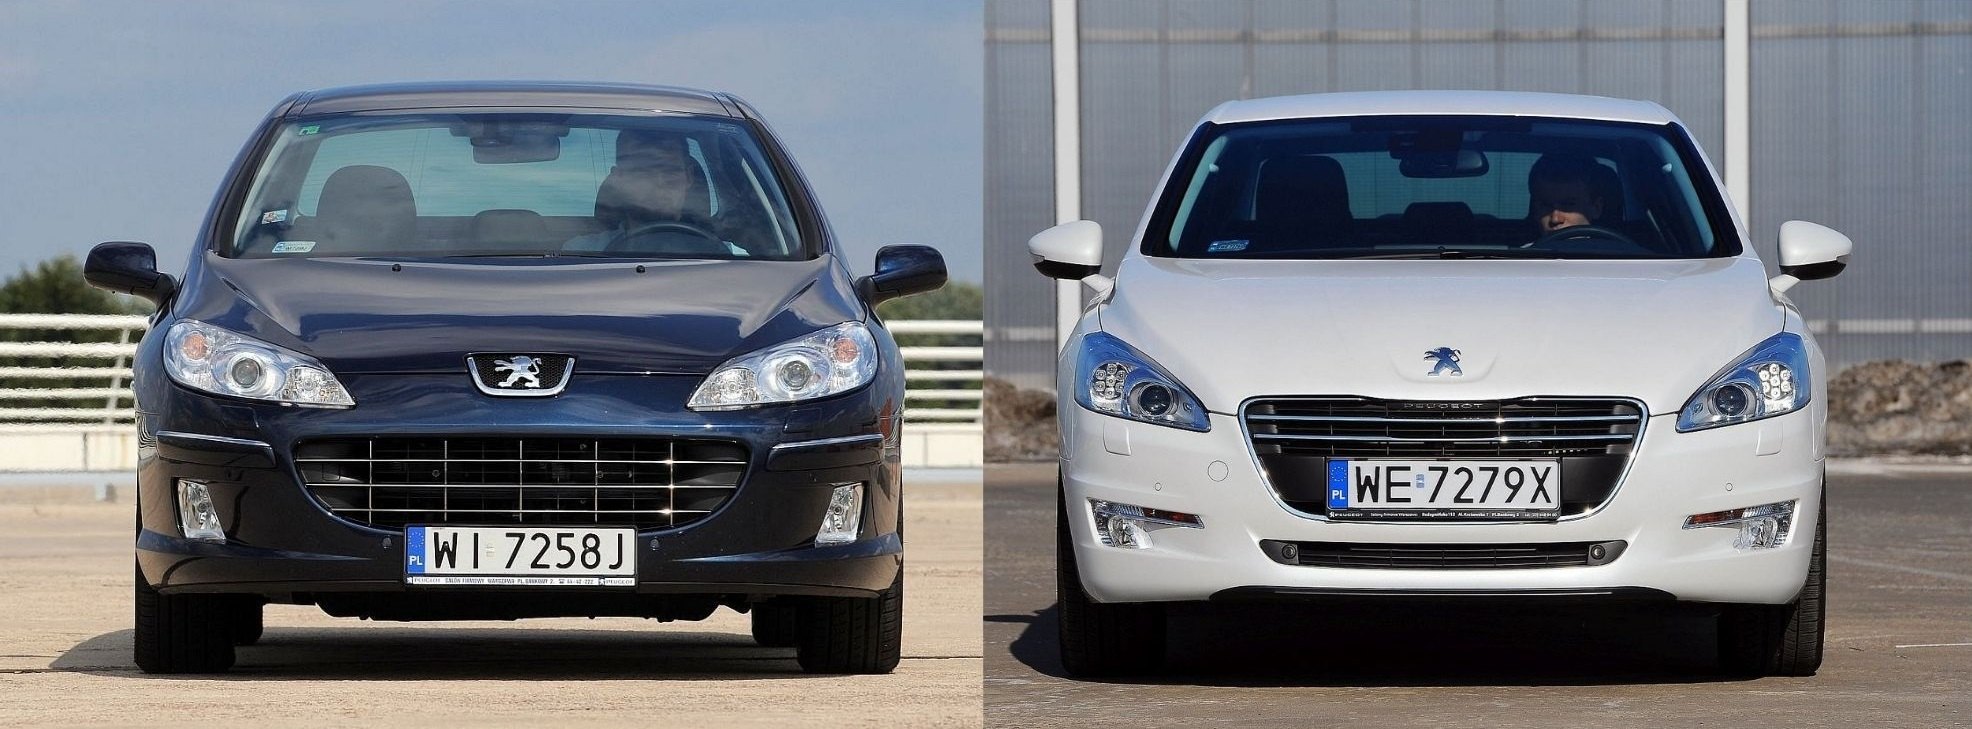 Używany Peugeot 407 i Peugeot 508 I którego wybrać?